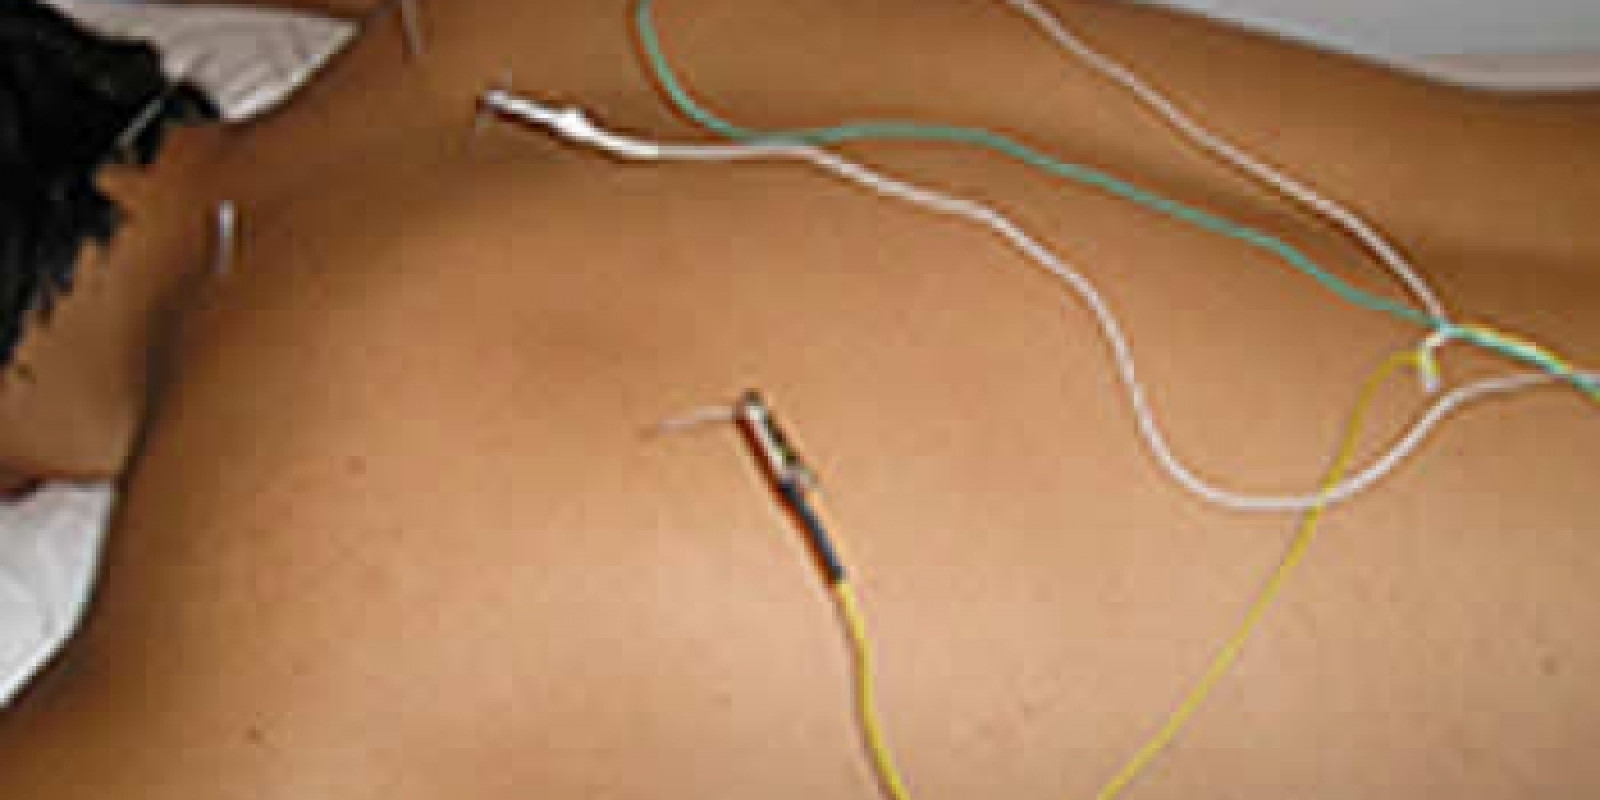 Os efeitos da eletro acupuntura no alí­vio da dor nas costas